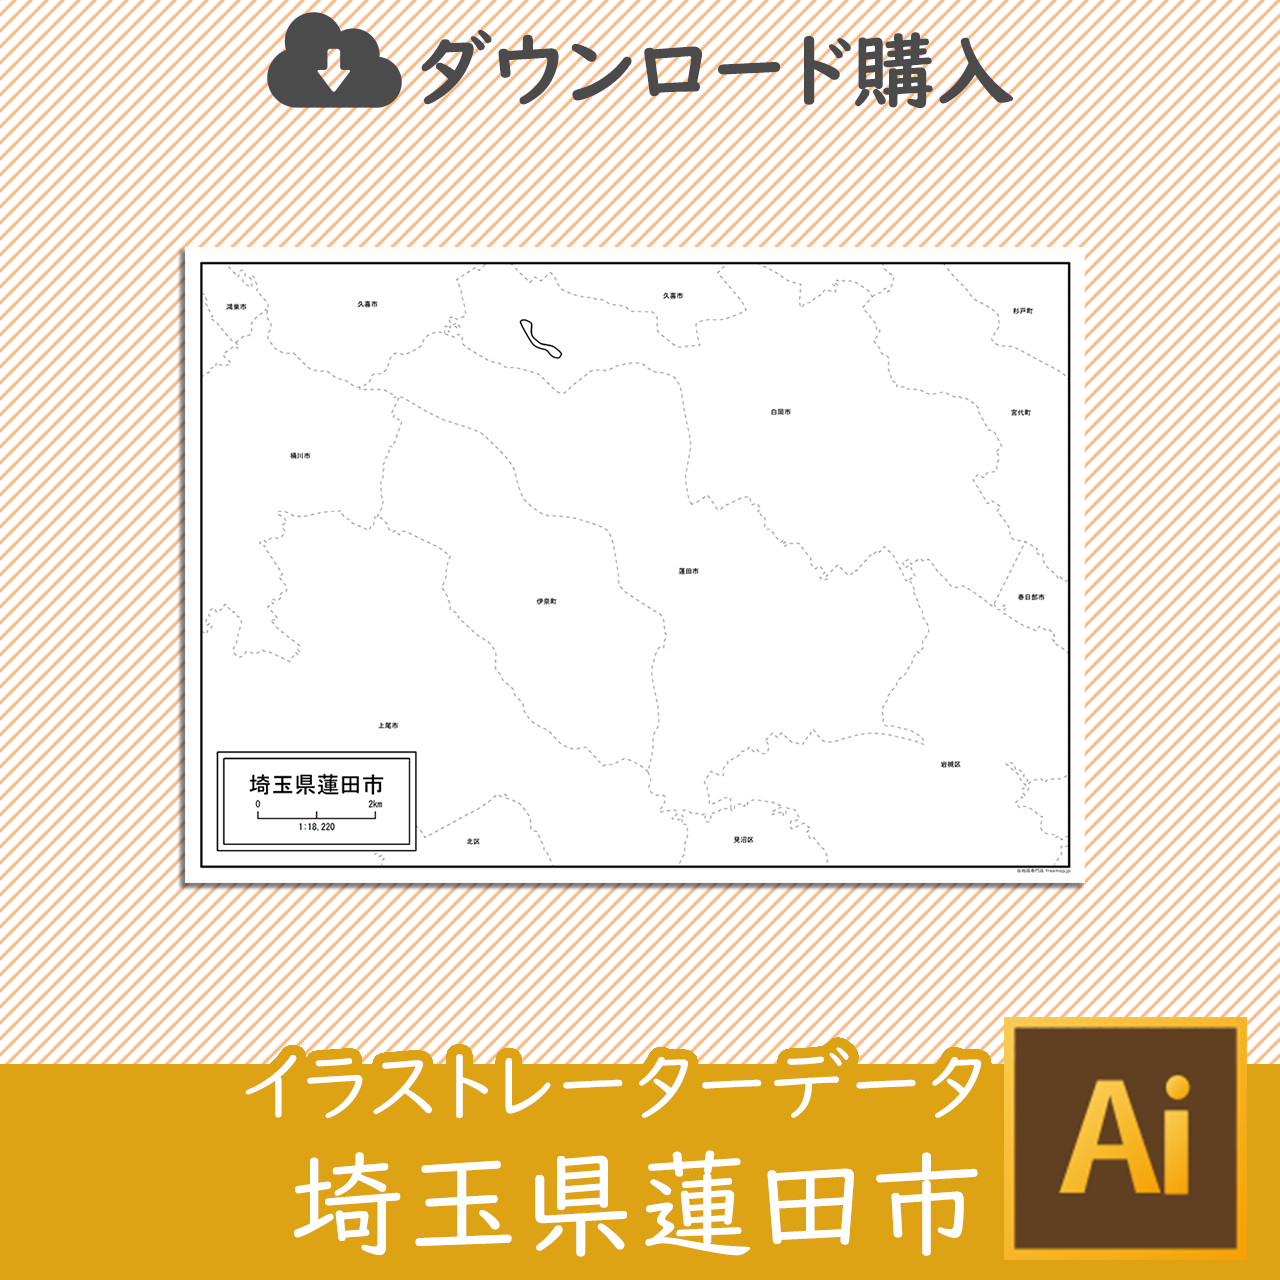 蓮田市のaiデータのサムネイル画像